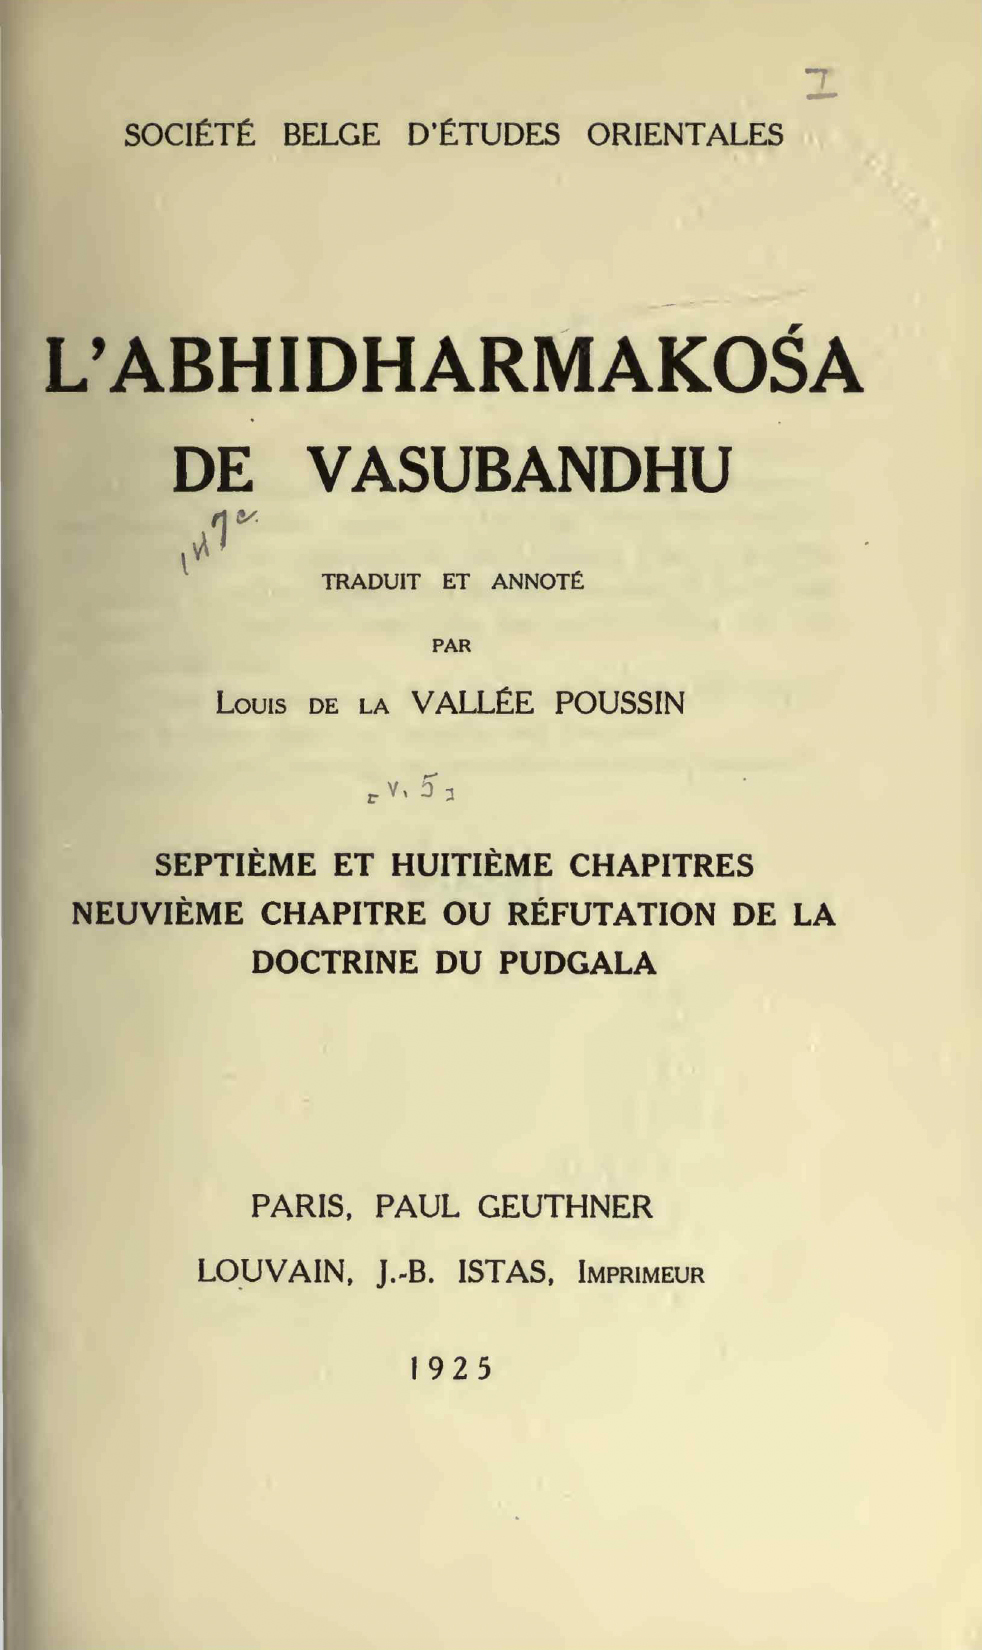 L'Abhidharmakośa de Vasubandhu Septième Huitième et Neuvième Chapitres-front.jpg